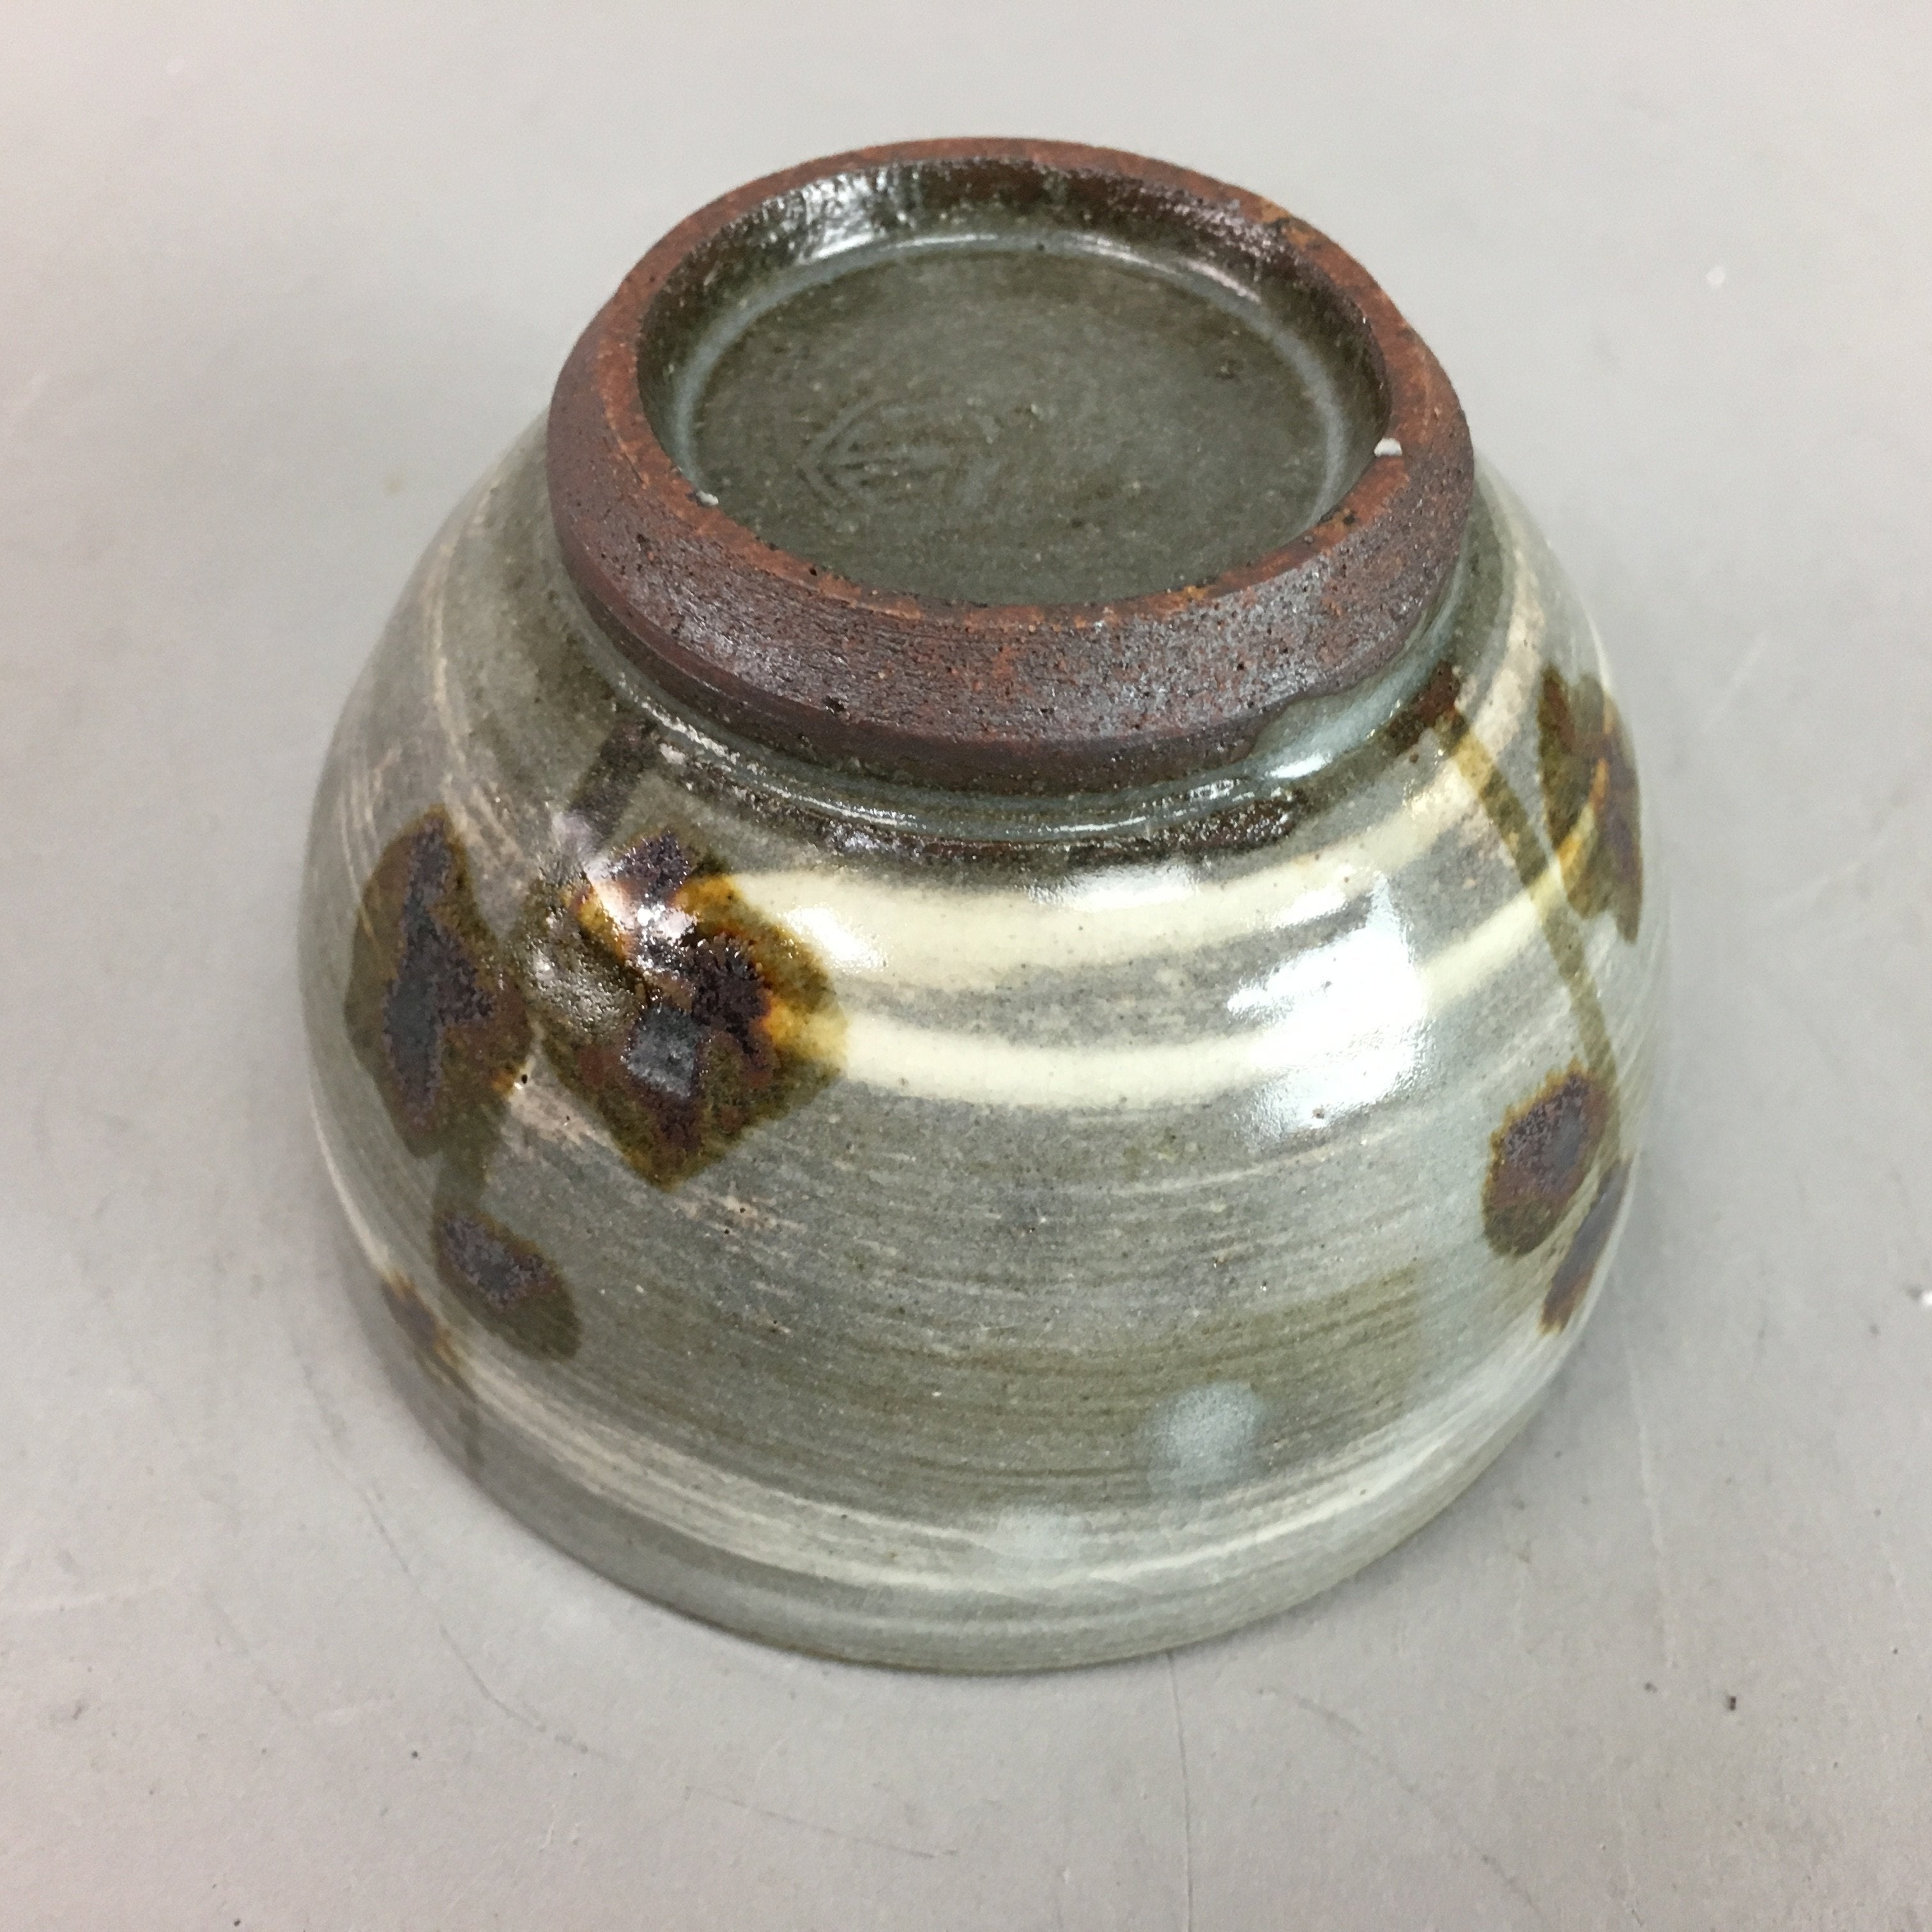 Japanese Ceramic Teacup Vtg Pottery Sencha Yunomi Brush Mark Gray White PT283